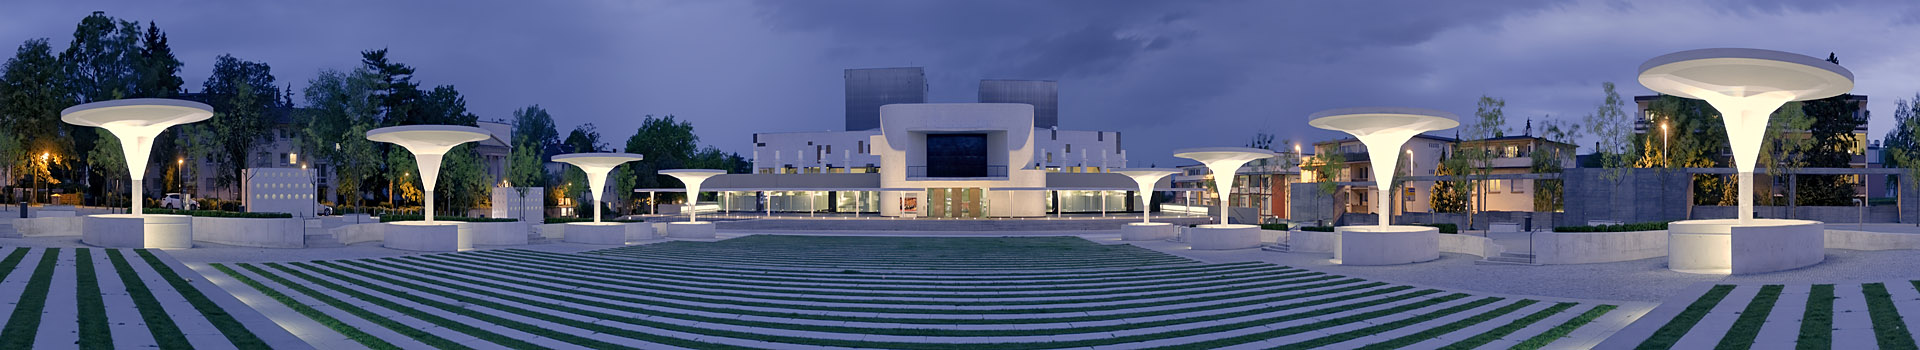 Staatstheater Darmstadt Panorama beleuchtete Abendstimmung HDR